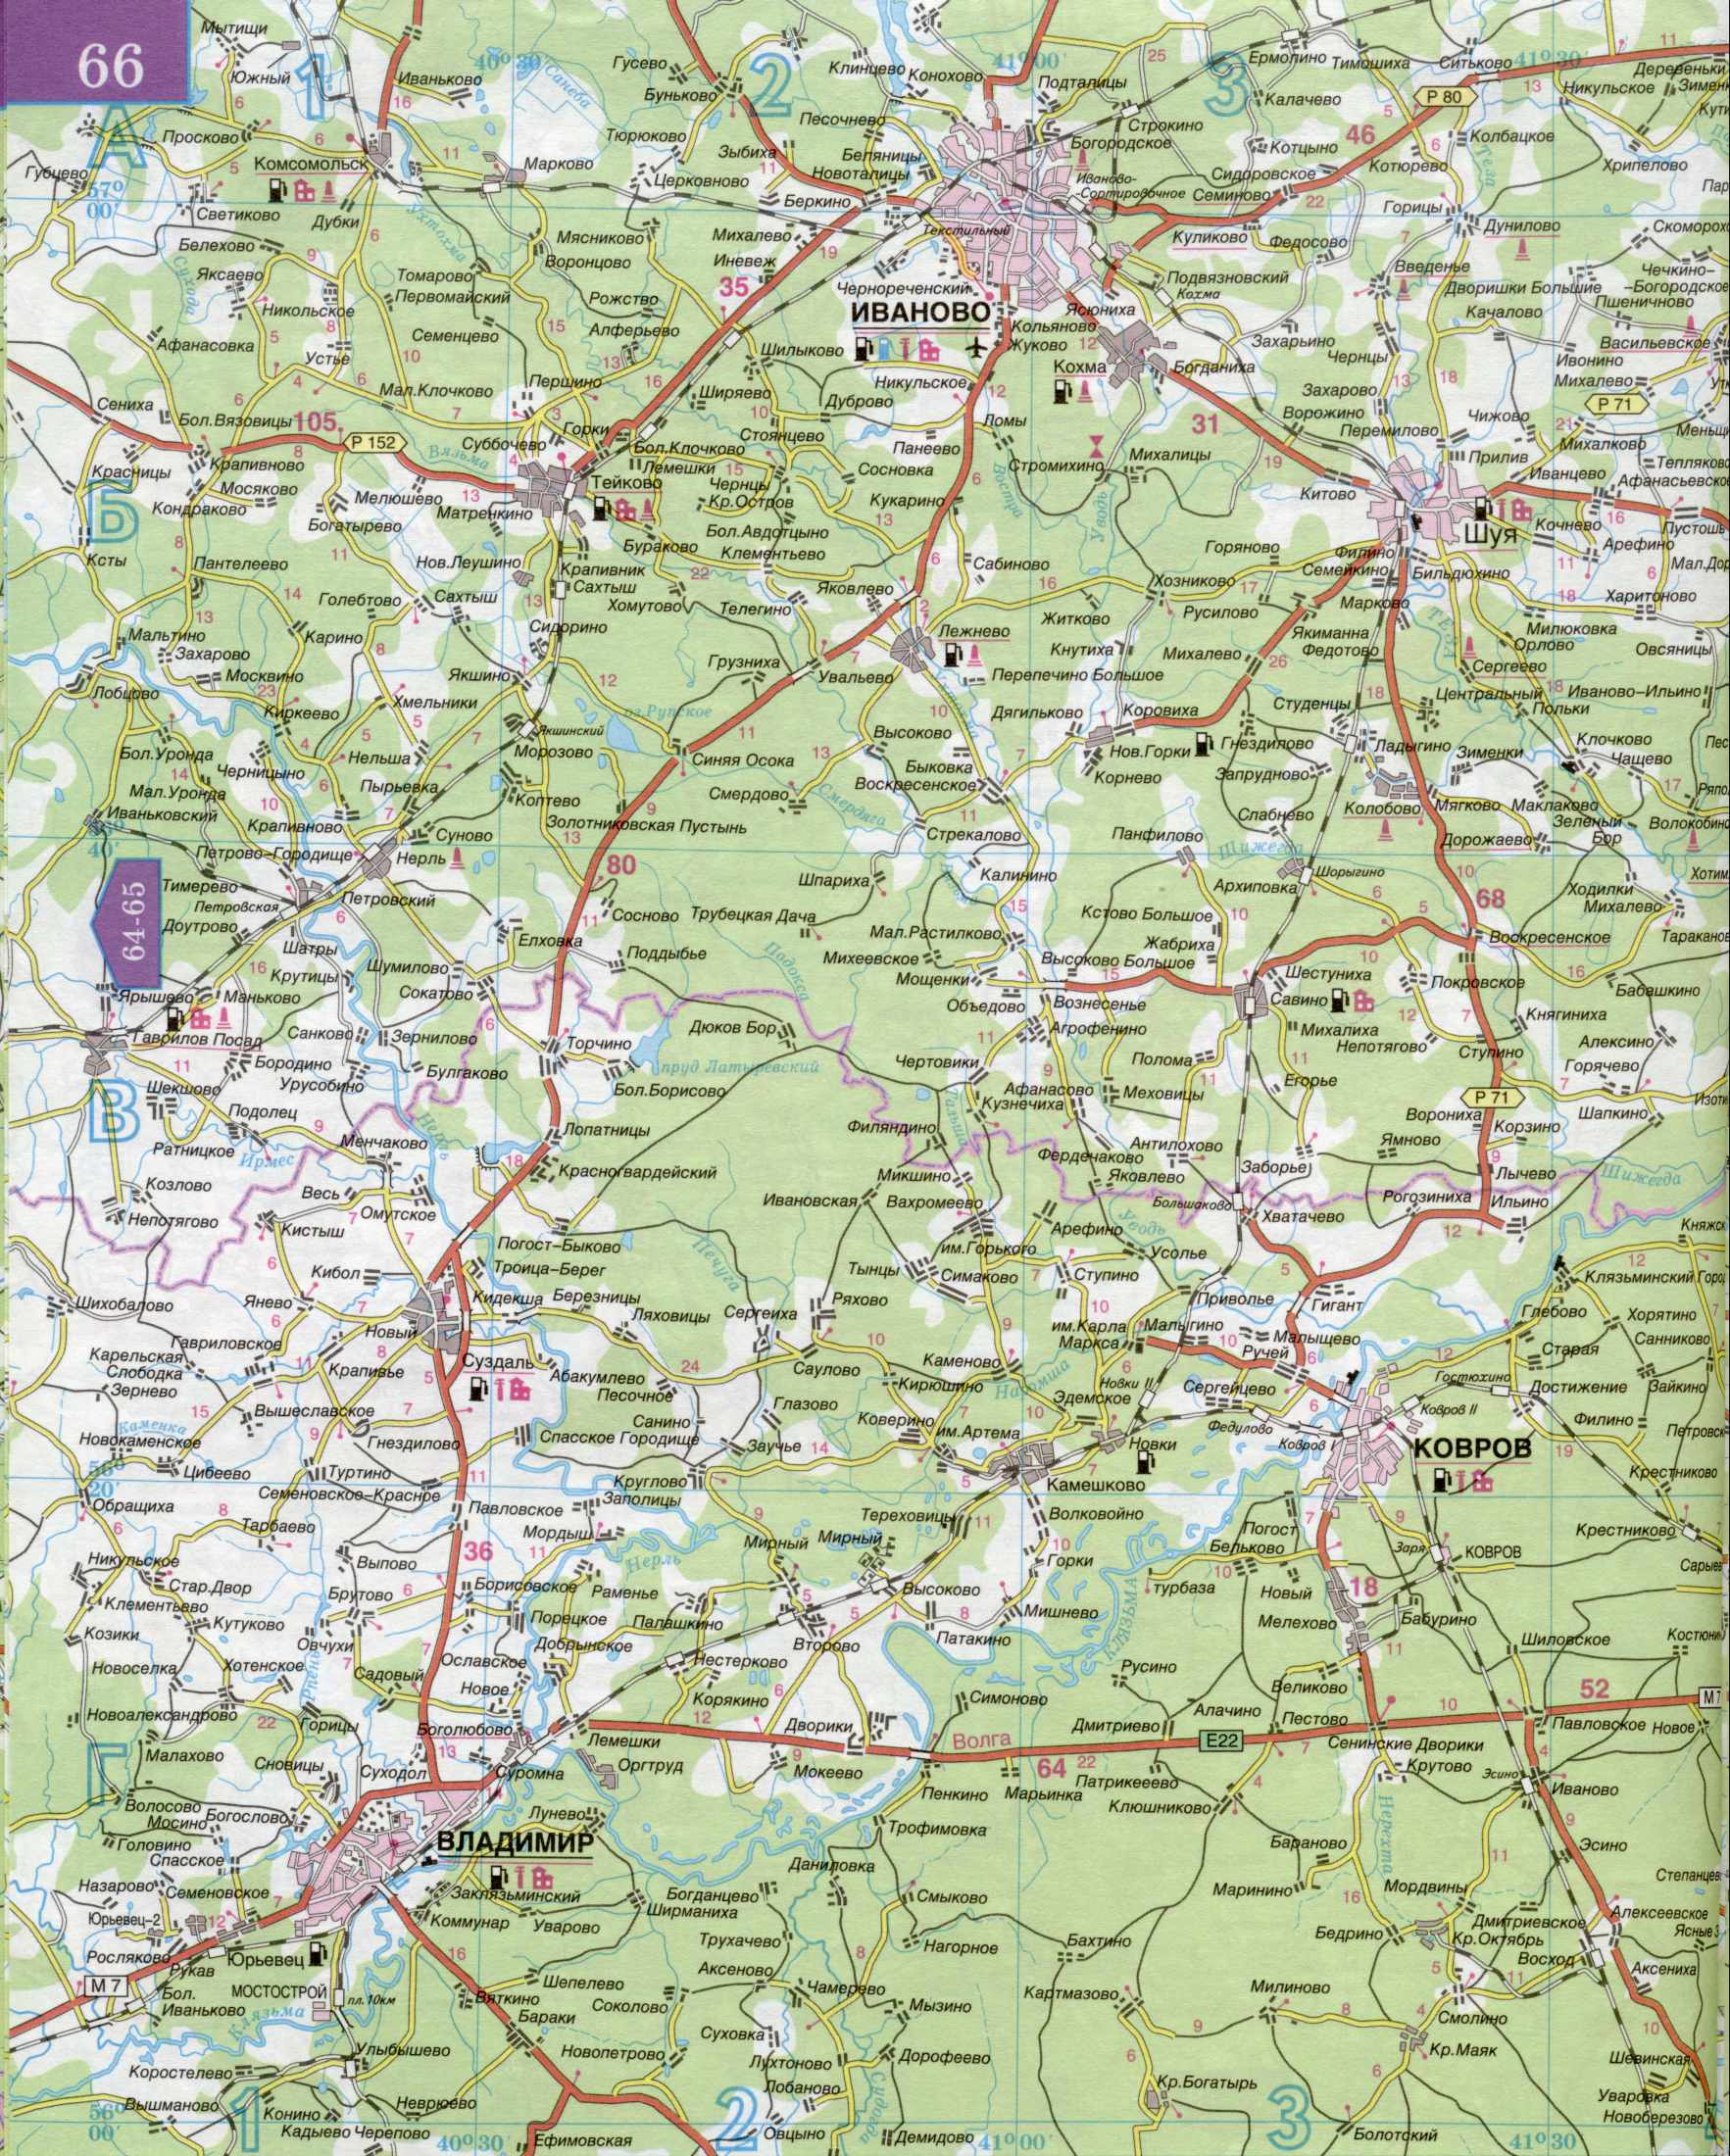 Карта автомобильных дорог Московской области 1см=5км. Подробная карта автомобильных дорог  - Московская область и прилегающие территории. Скачать бесплатно, D0 - 